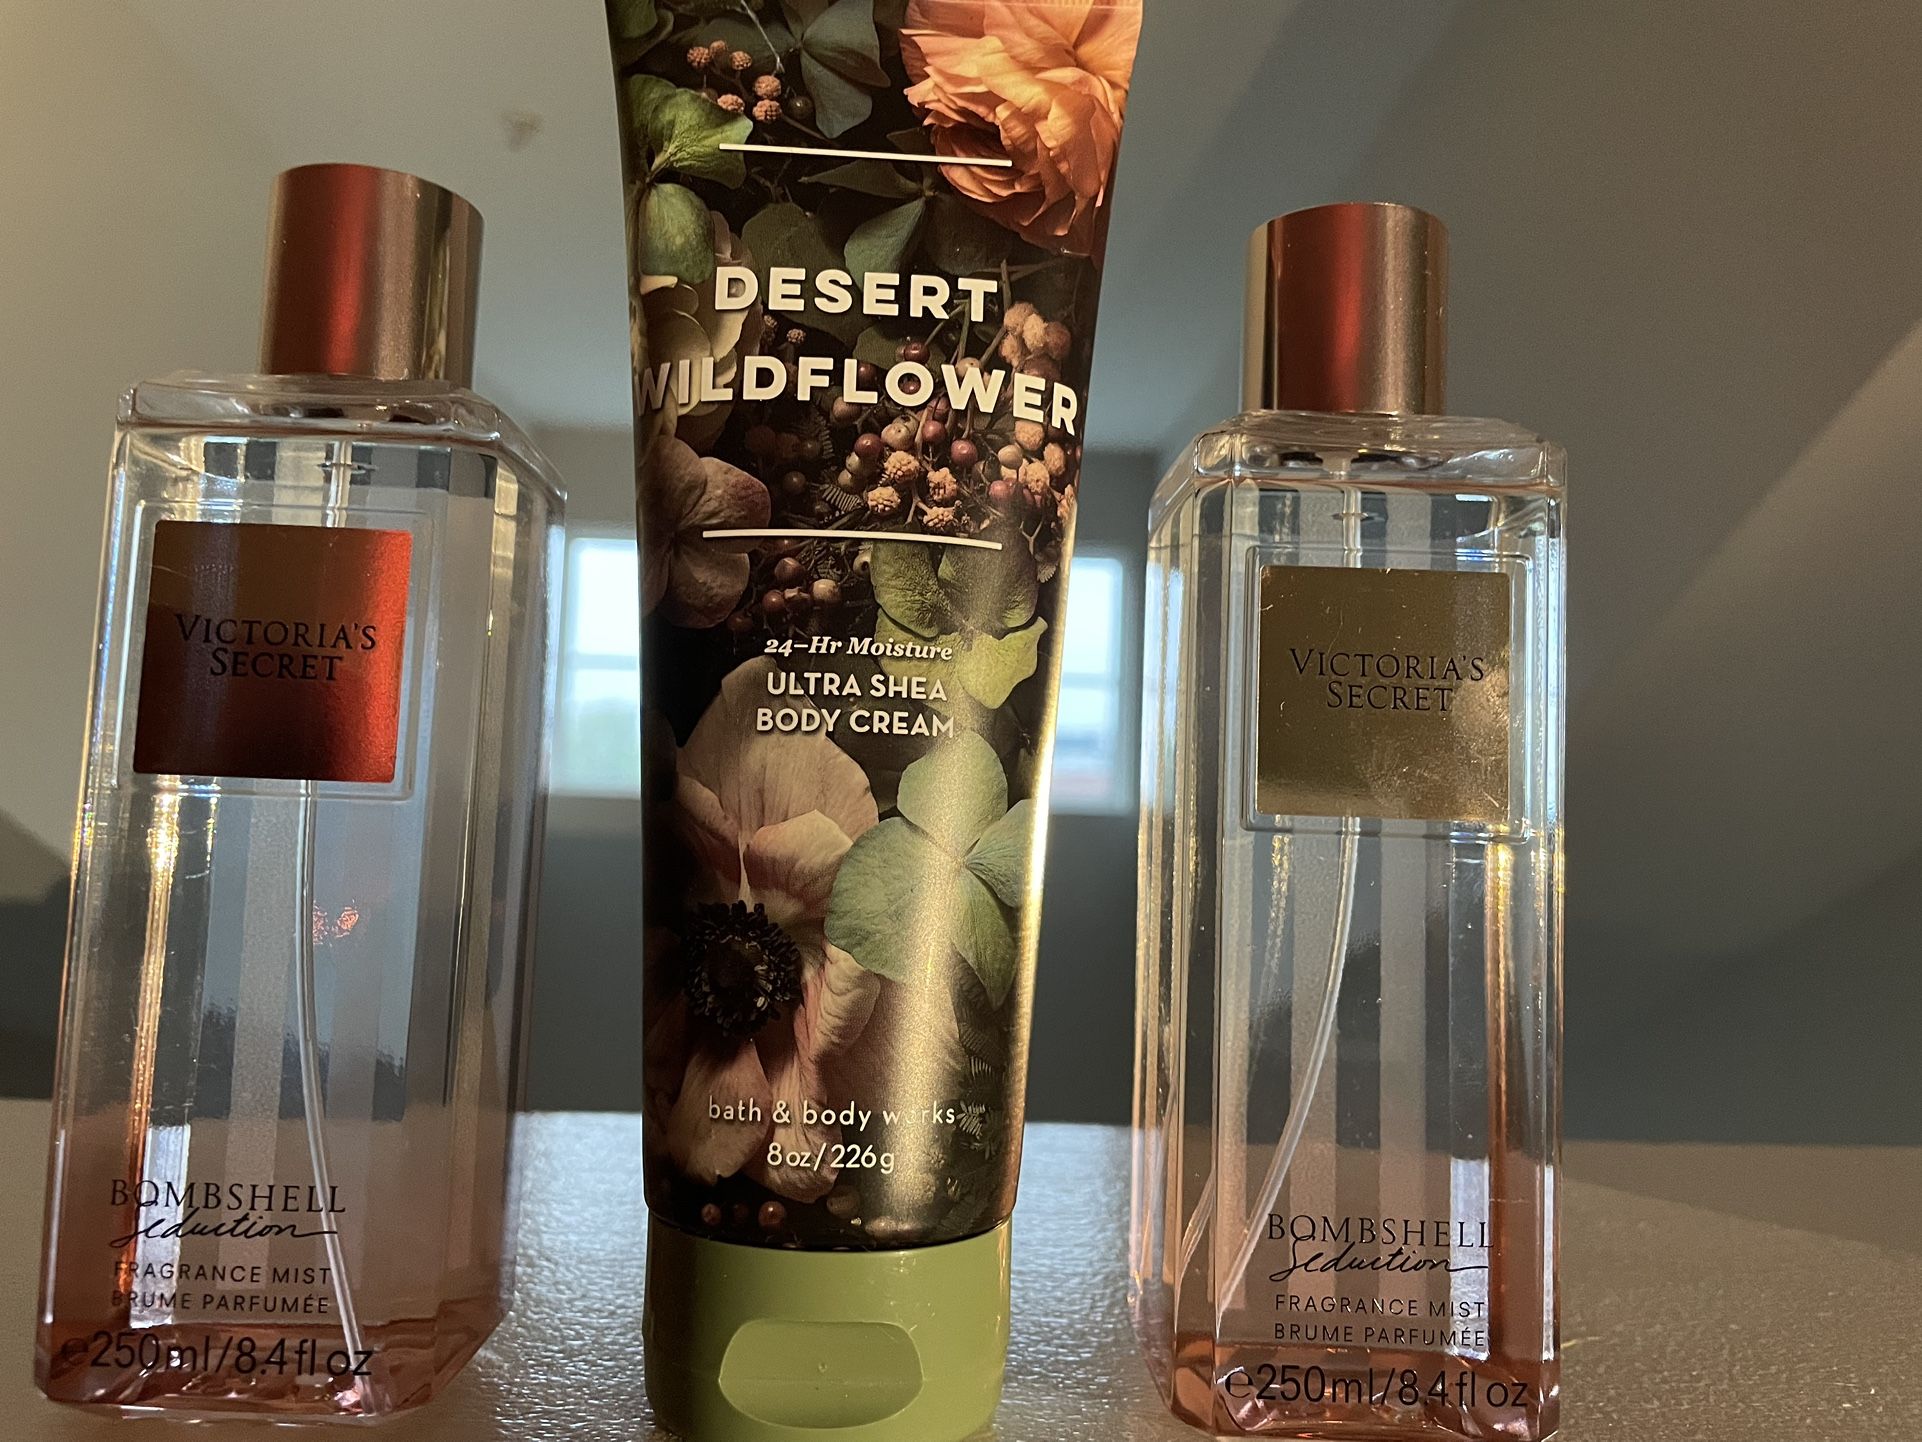 2 Bottles Of Victoria Secret Bombshell Seduction With Desert Wildflower Body Cream